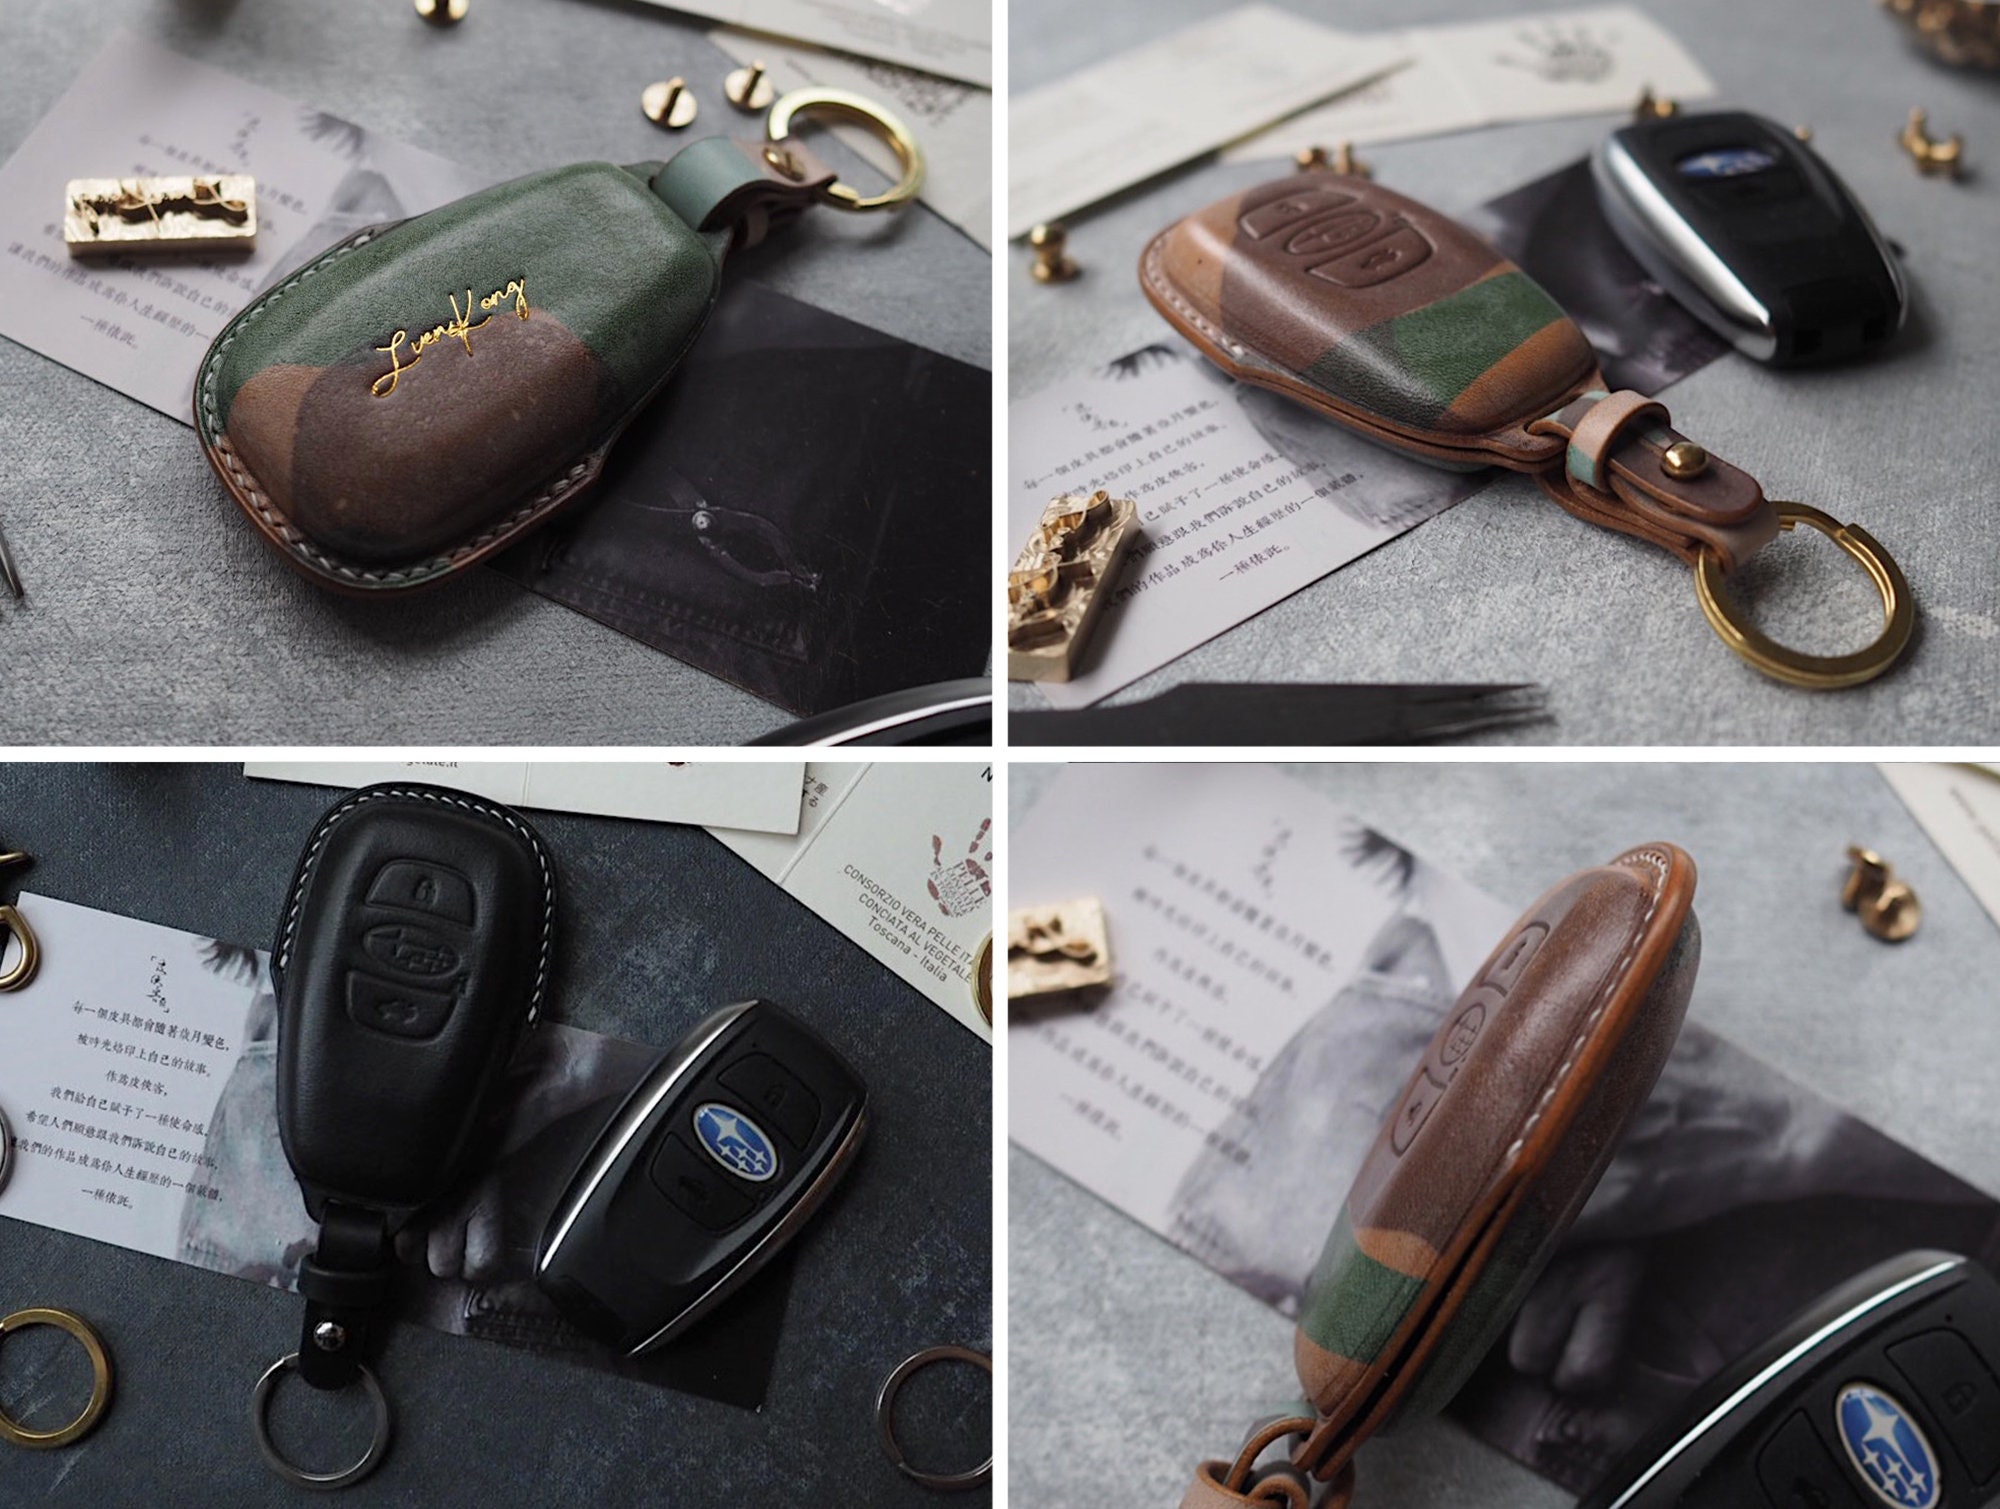 Porte-clés en cuir V2 avec logo Subaru – acheter dans la boutique en ligne